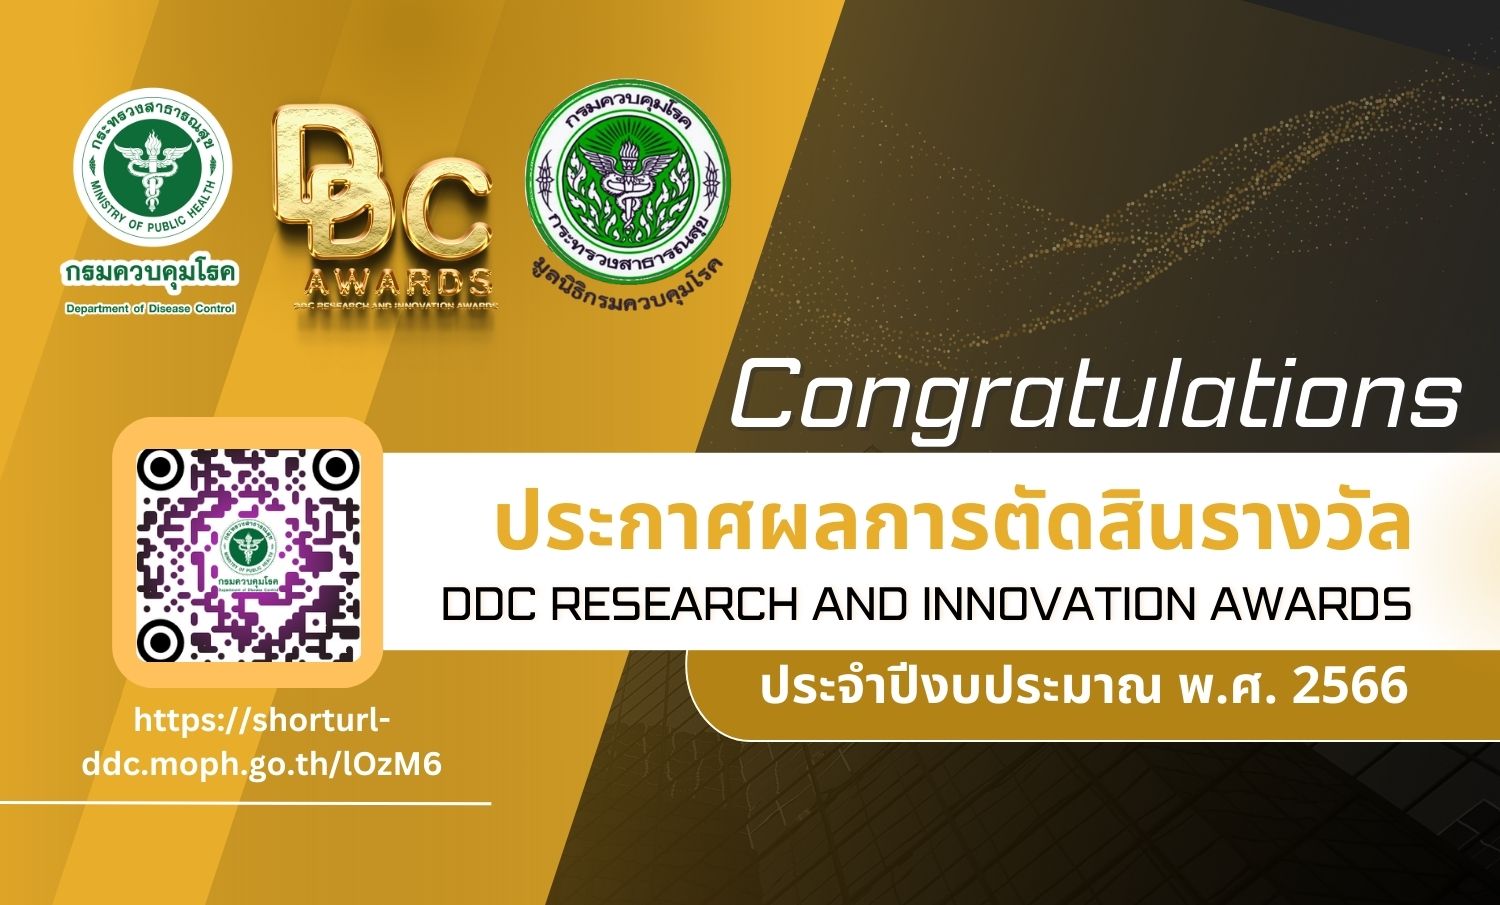 ประกาศผลการตัดสินรางวัล DDC Research and Innovation Awards ประจำปีงบประมาณ พ.ศ. 2566